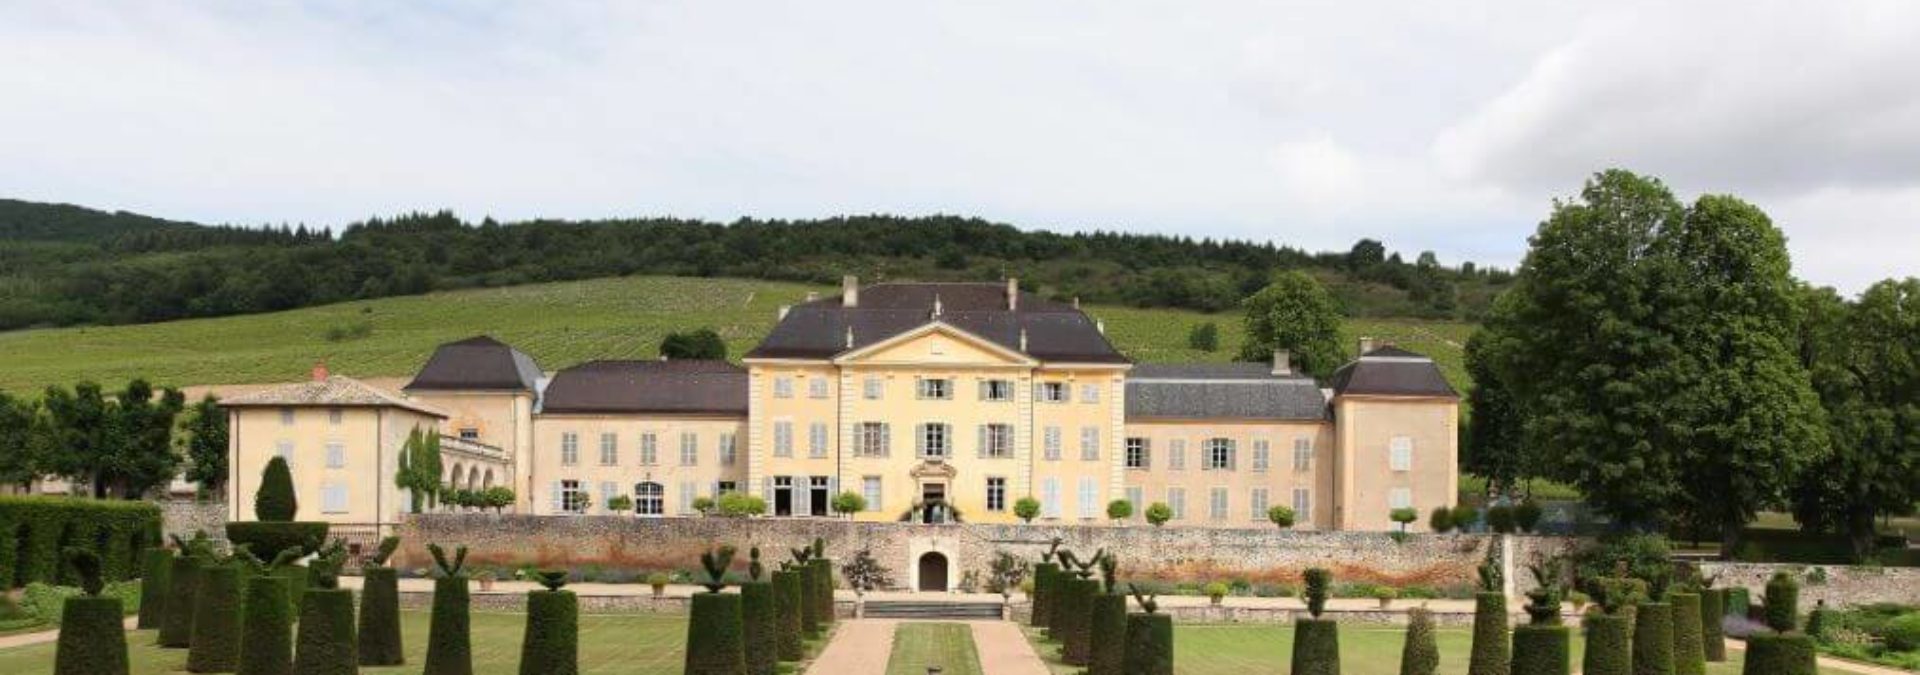 Château de La Chaize